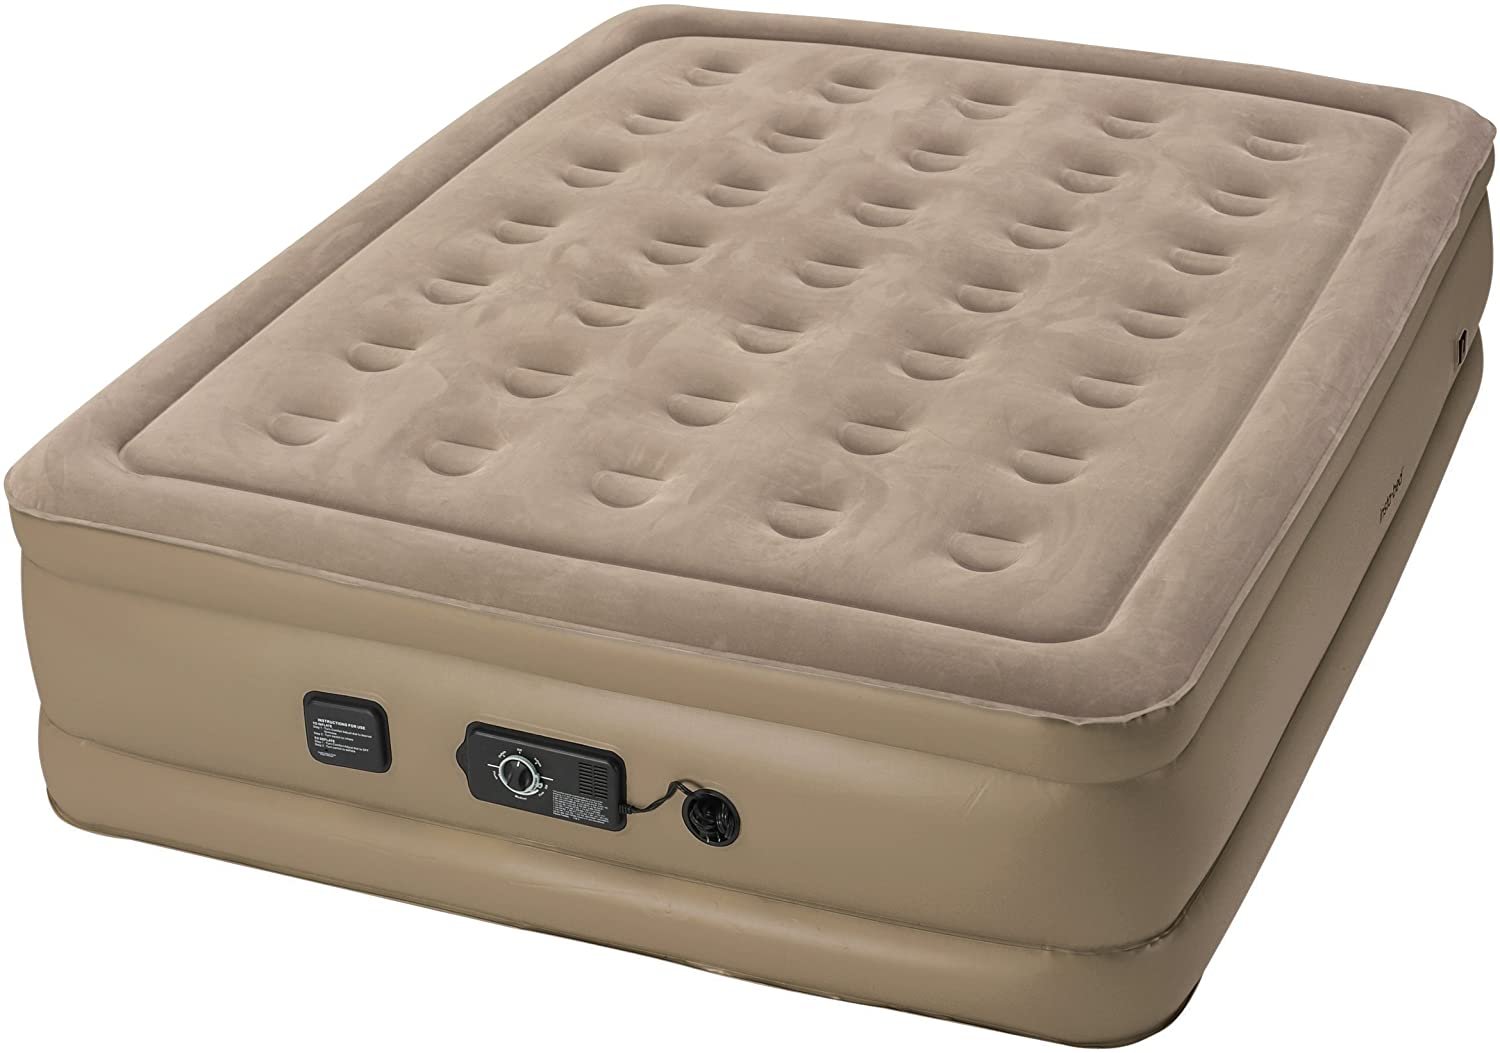 air cooled technology mattress